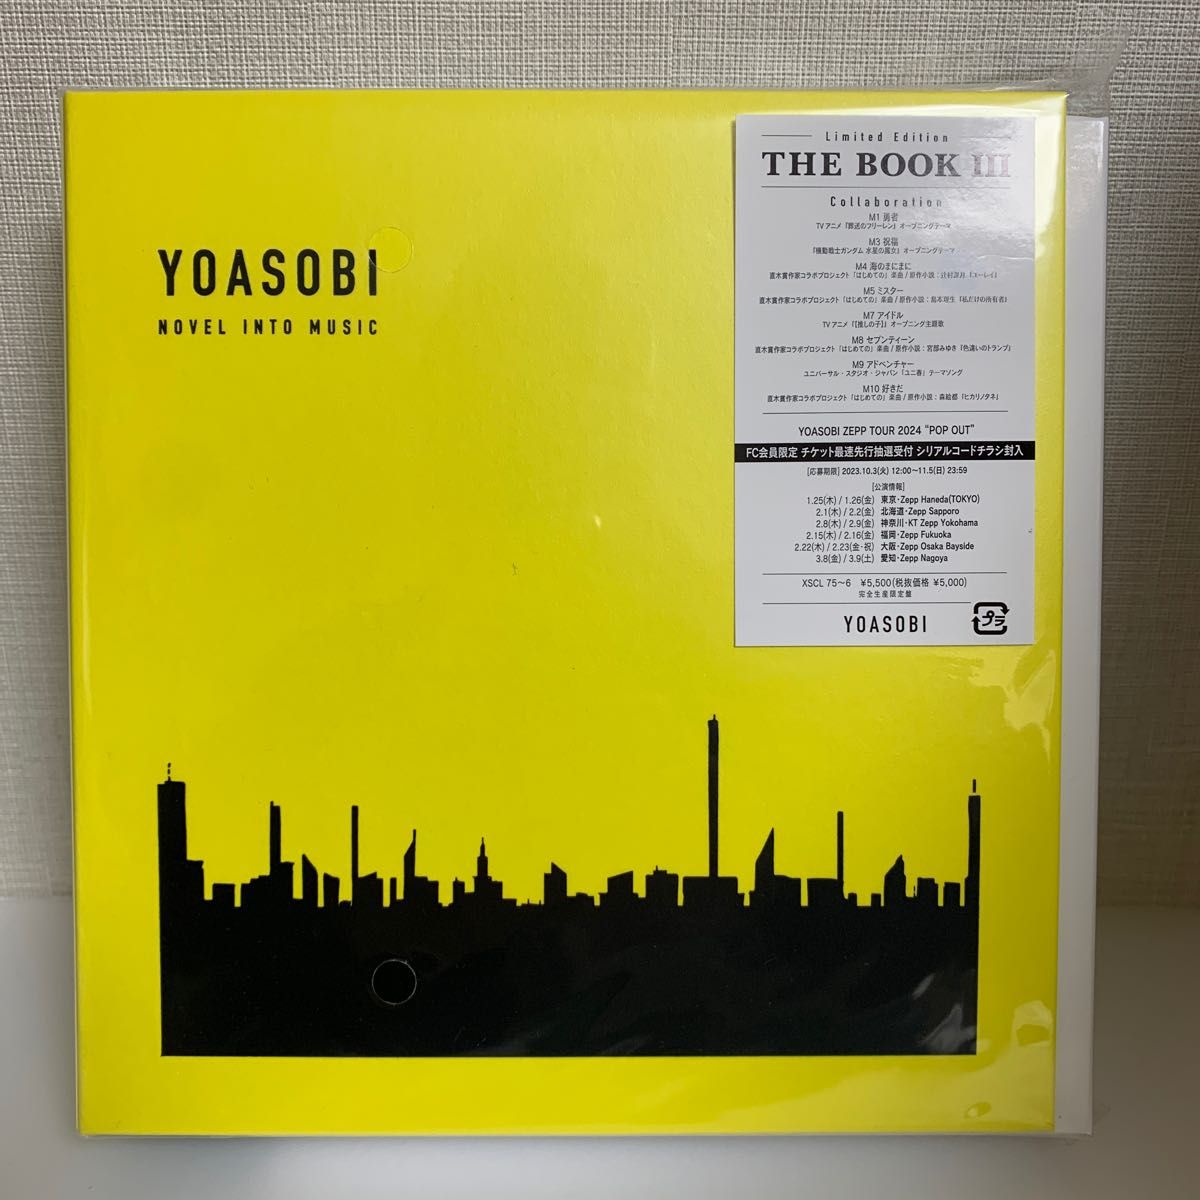 新品未再生 YOASOBI THE BOOK 3 CD+特製バインダー シリアルナンバー